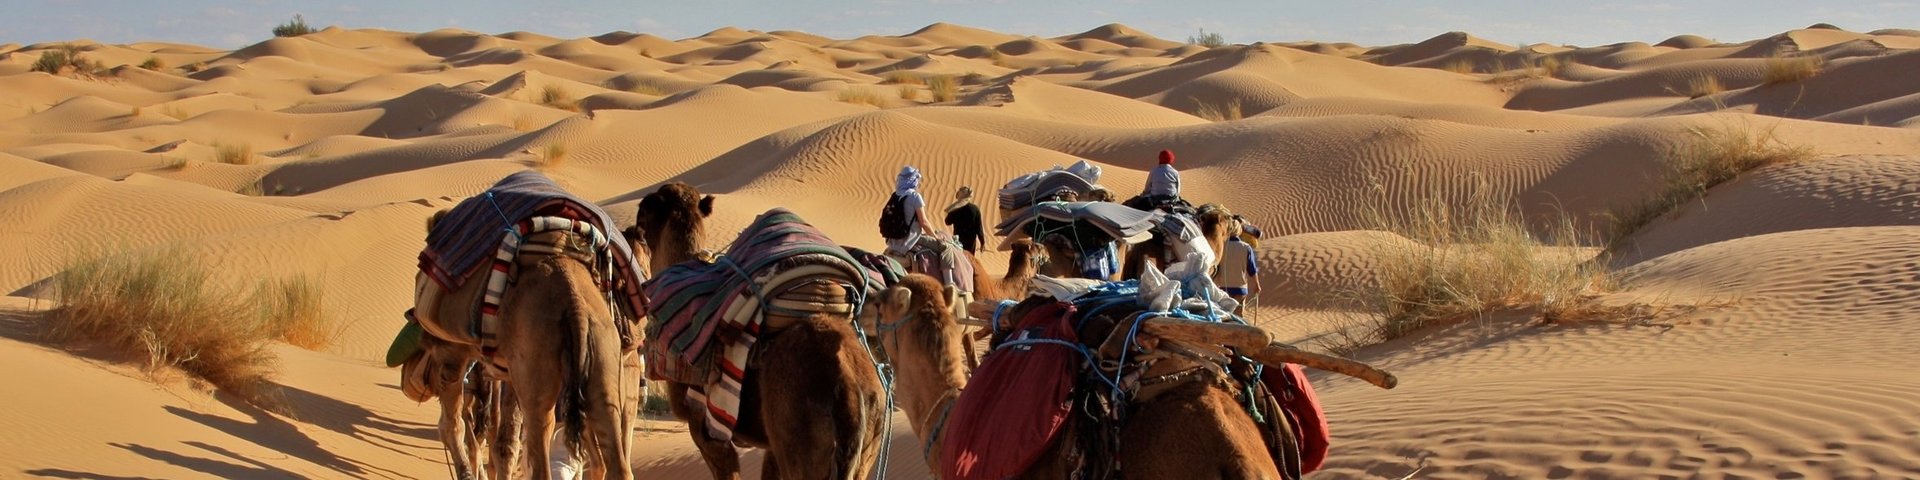 Kamelkarawane in der Wüste von Tunesien